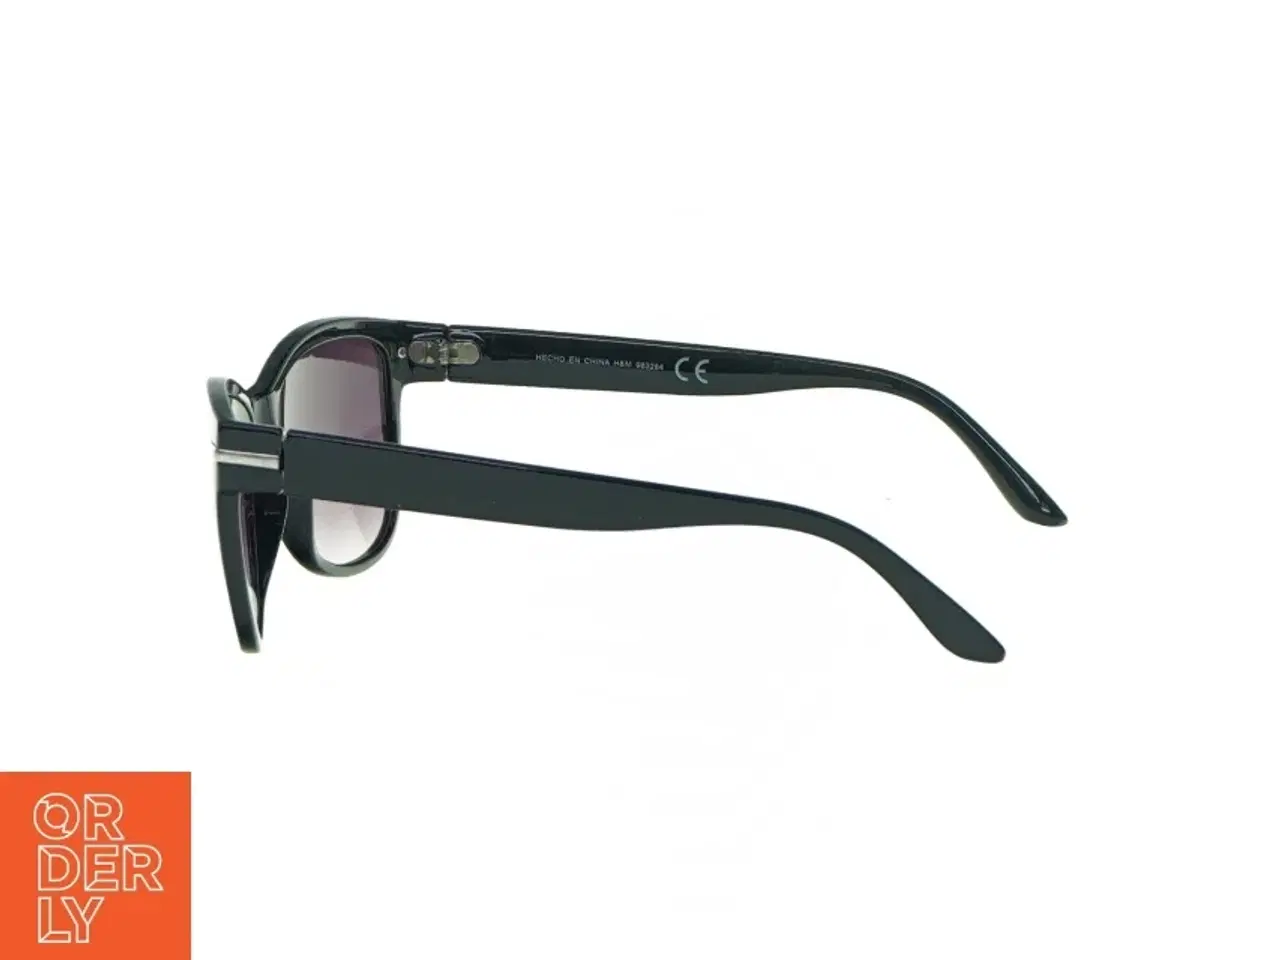 Billede 3 - Solbriller fra H&M (str. 13 x 5 cm)